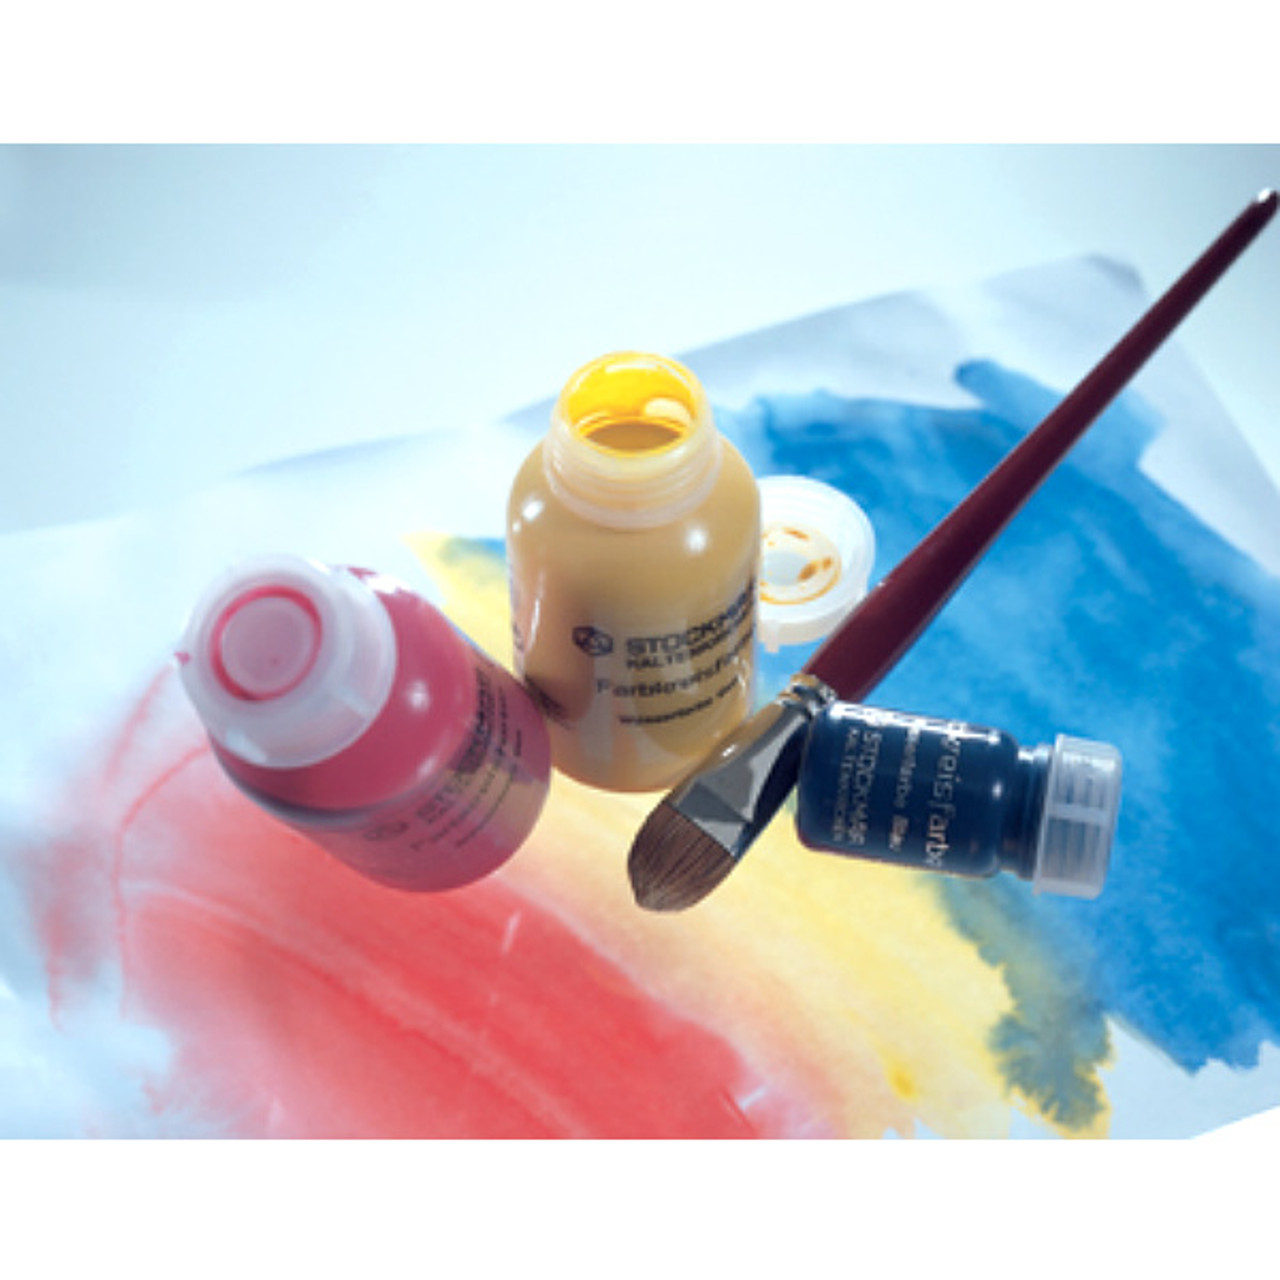 Stockmar Opaque Watercolor Paint Set - A Child's Dream